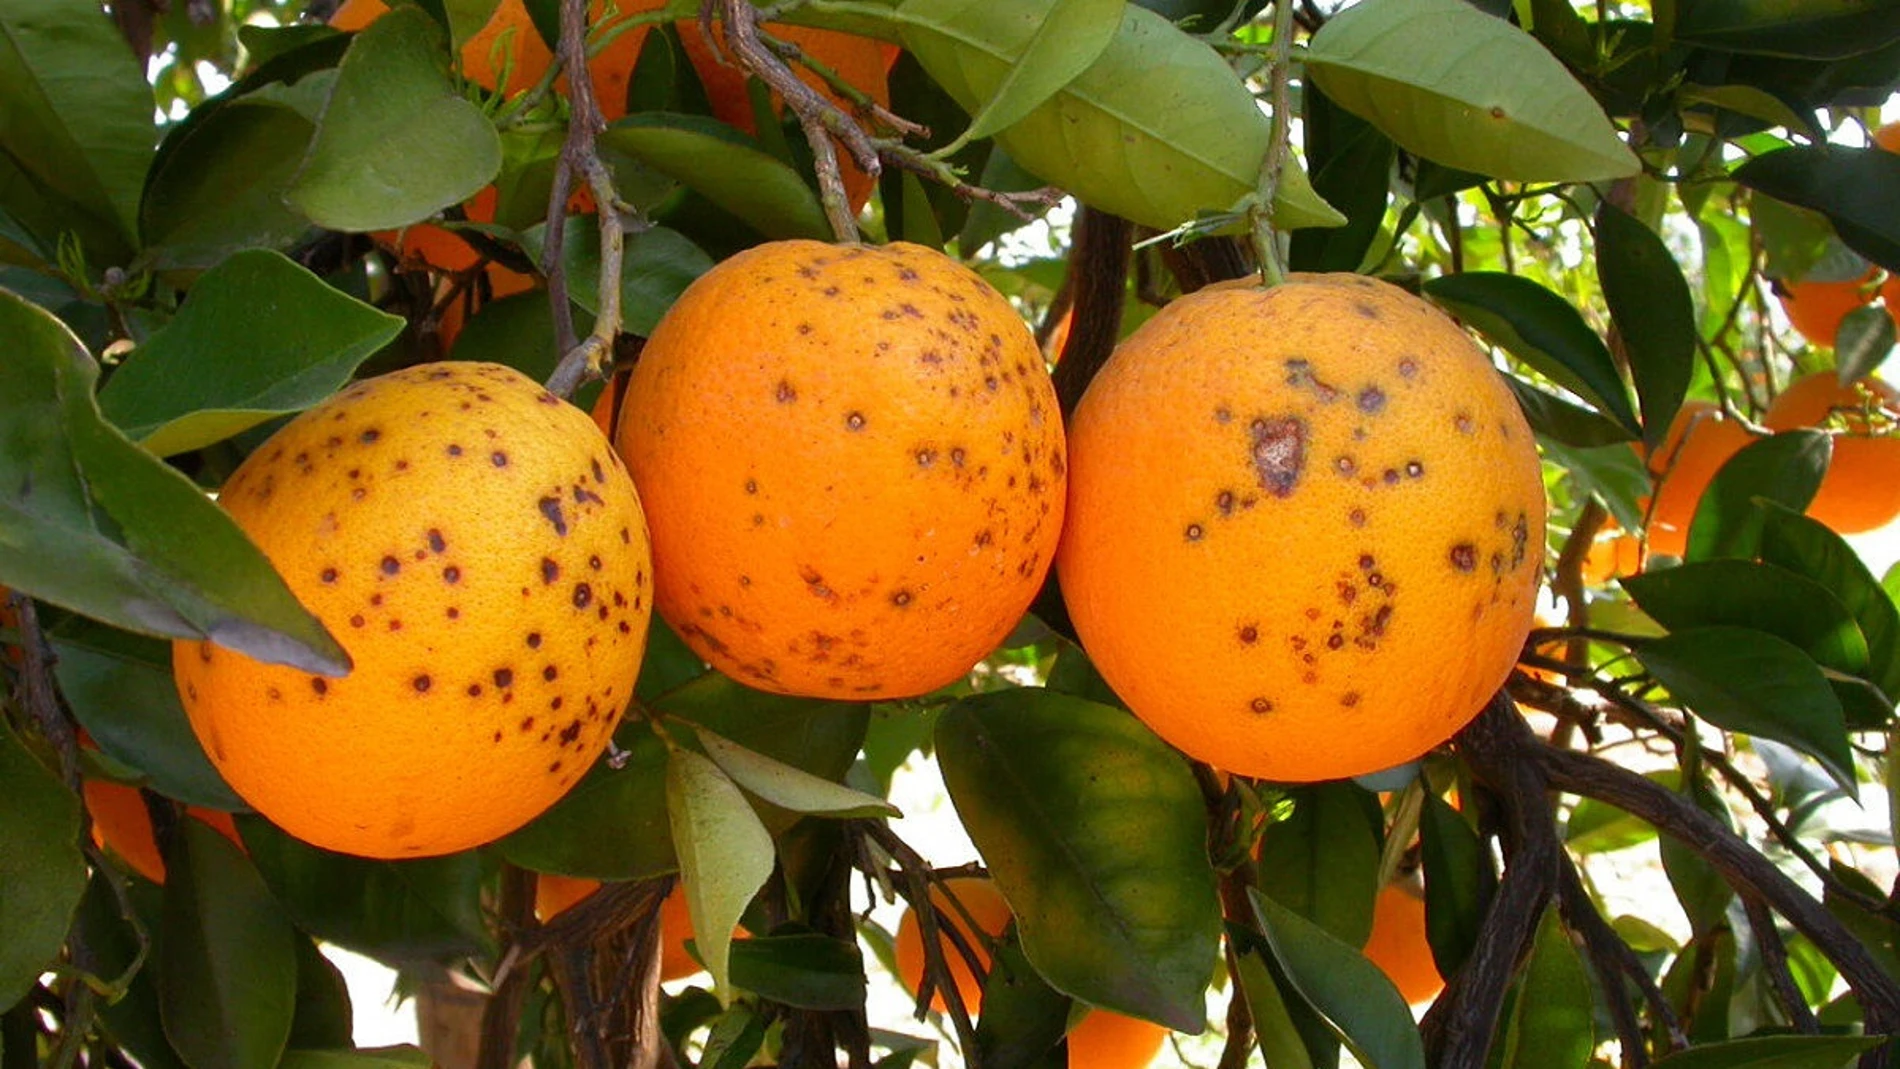 Naranjas con plagas. La importación de cítricos de terceros países supone un riesgo para la sanidad vegetal